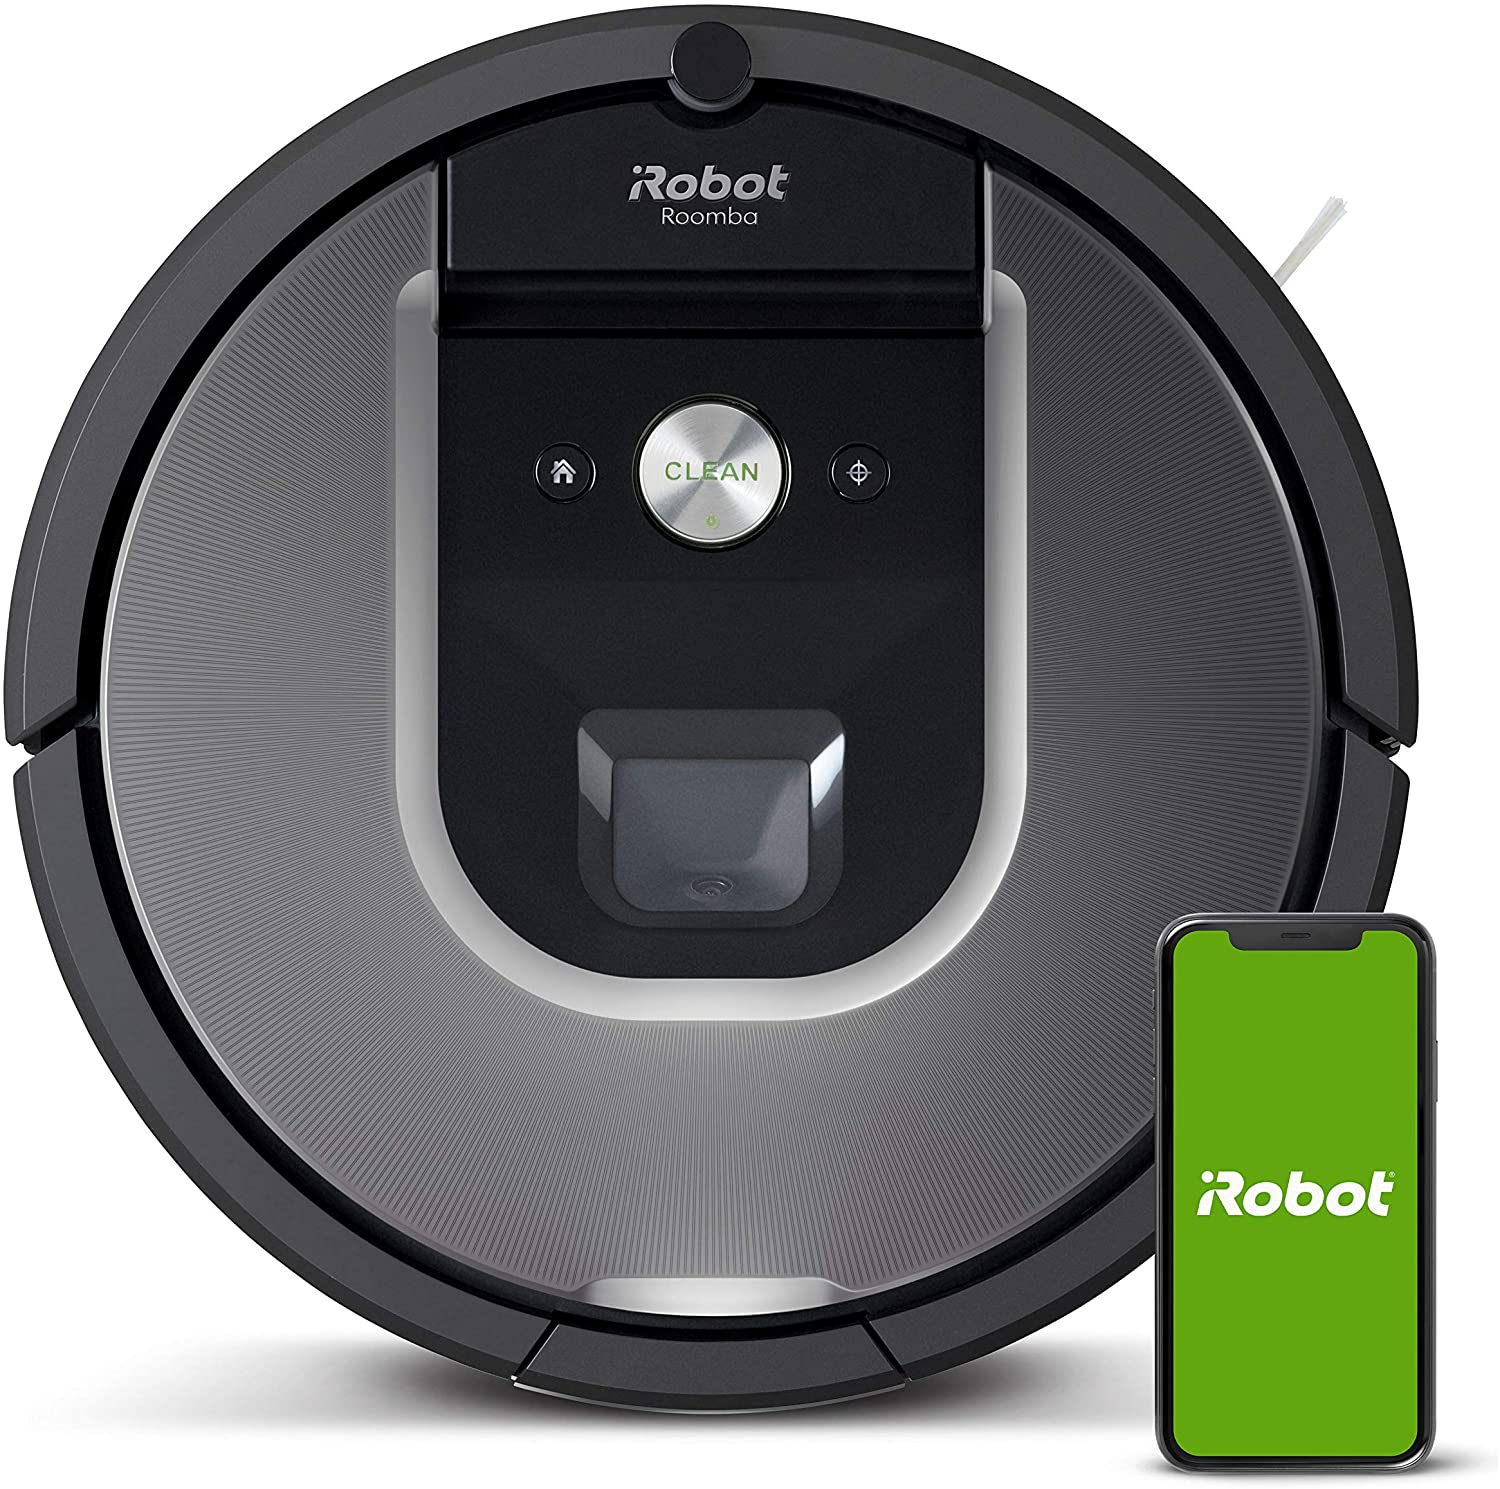 Roomba 891 vs Roomba